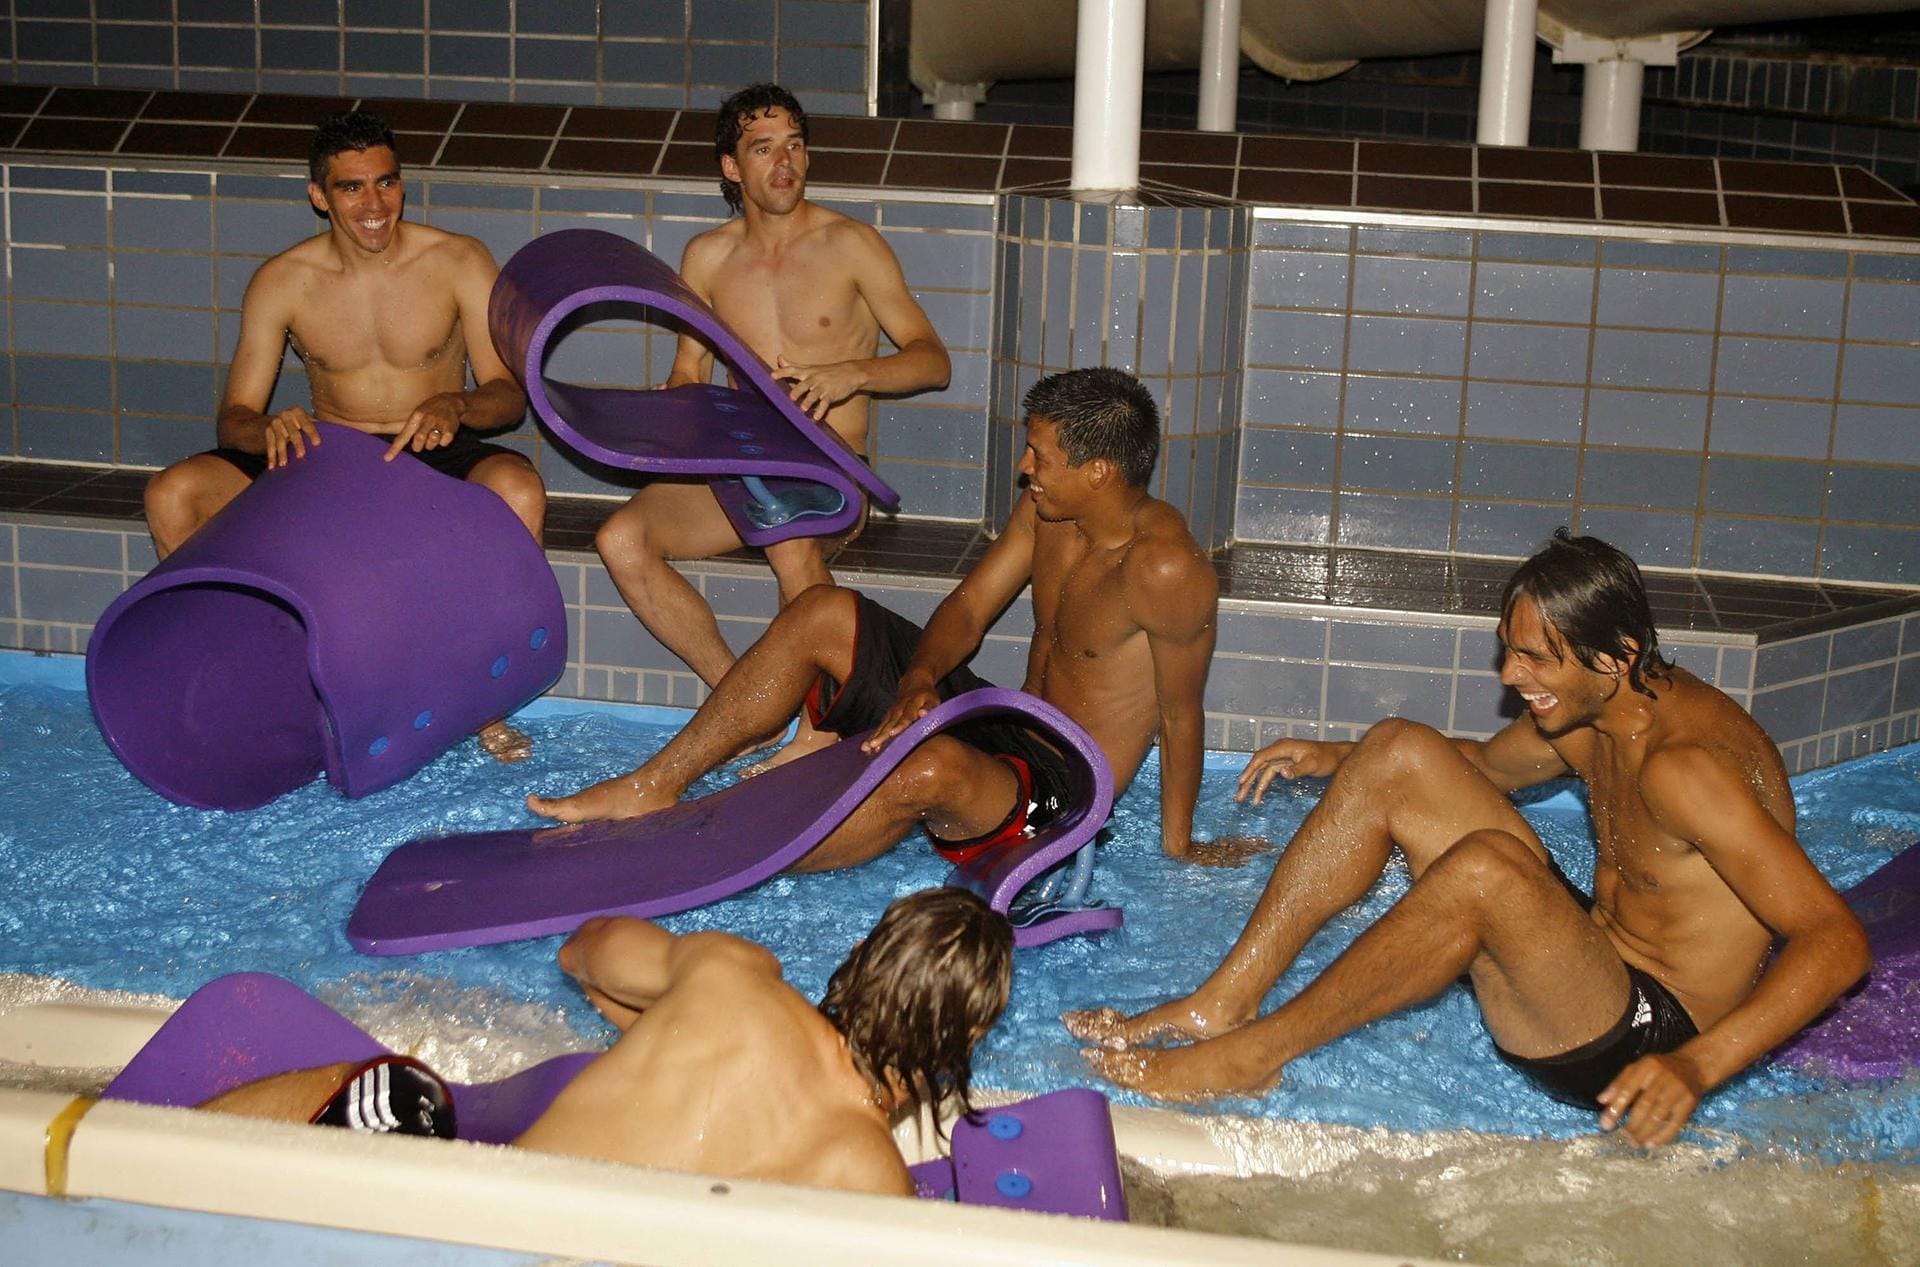 Die Mannschaft des FC Bayern München 2006 sieht im Pool dagegen eher aus wie eine Schülergruppe auf Abschlussfahrt.